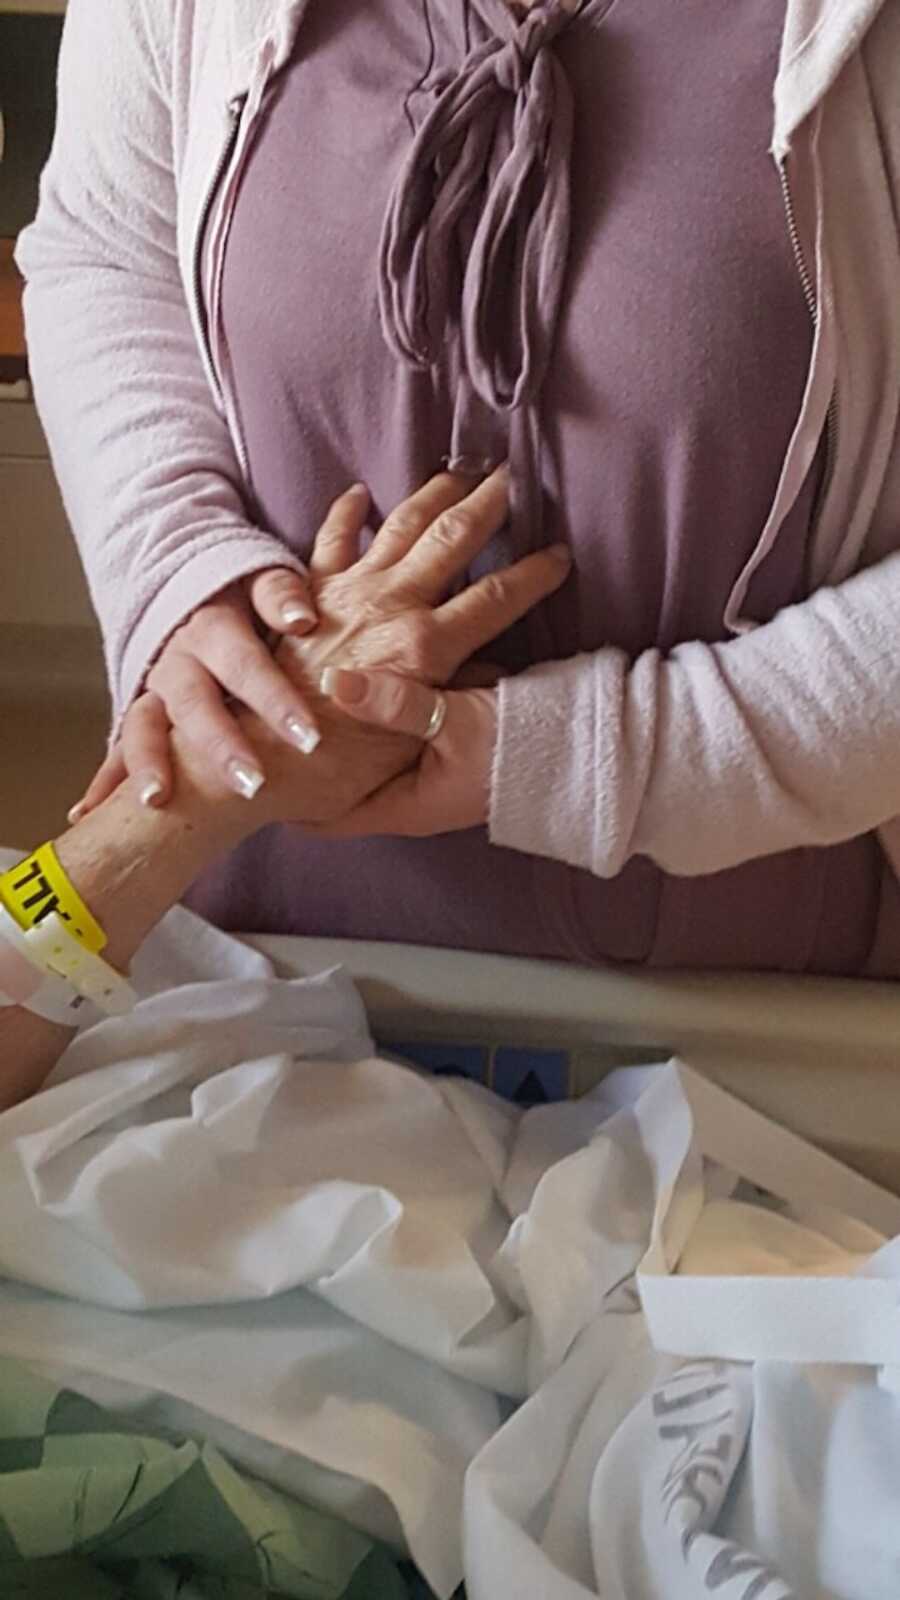 granddaughter holds her grandma's hand before she passes